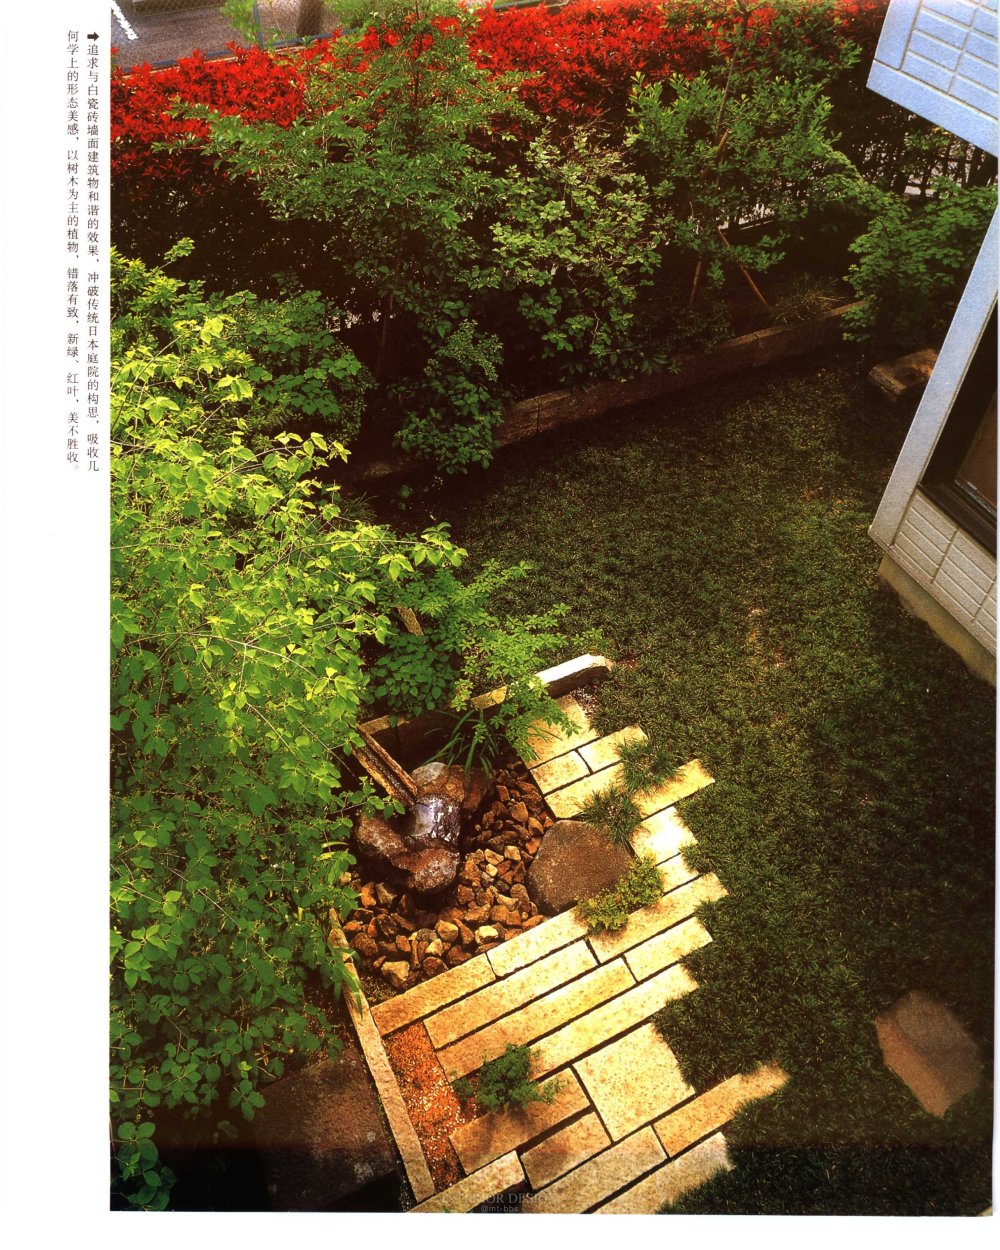 日本庭院景致设计（日）高野好造著_00000008.jpg